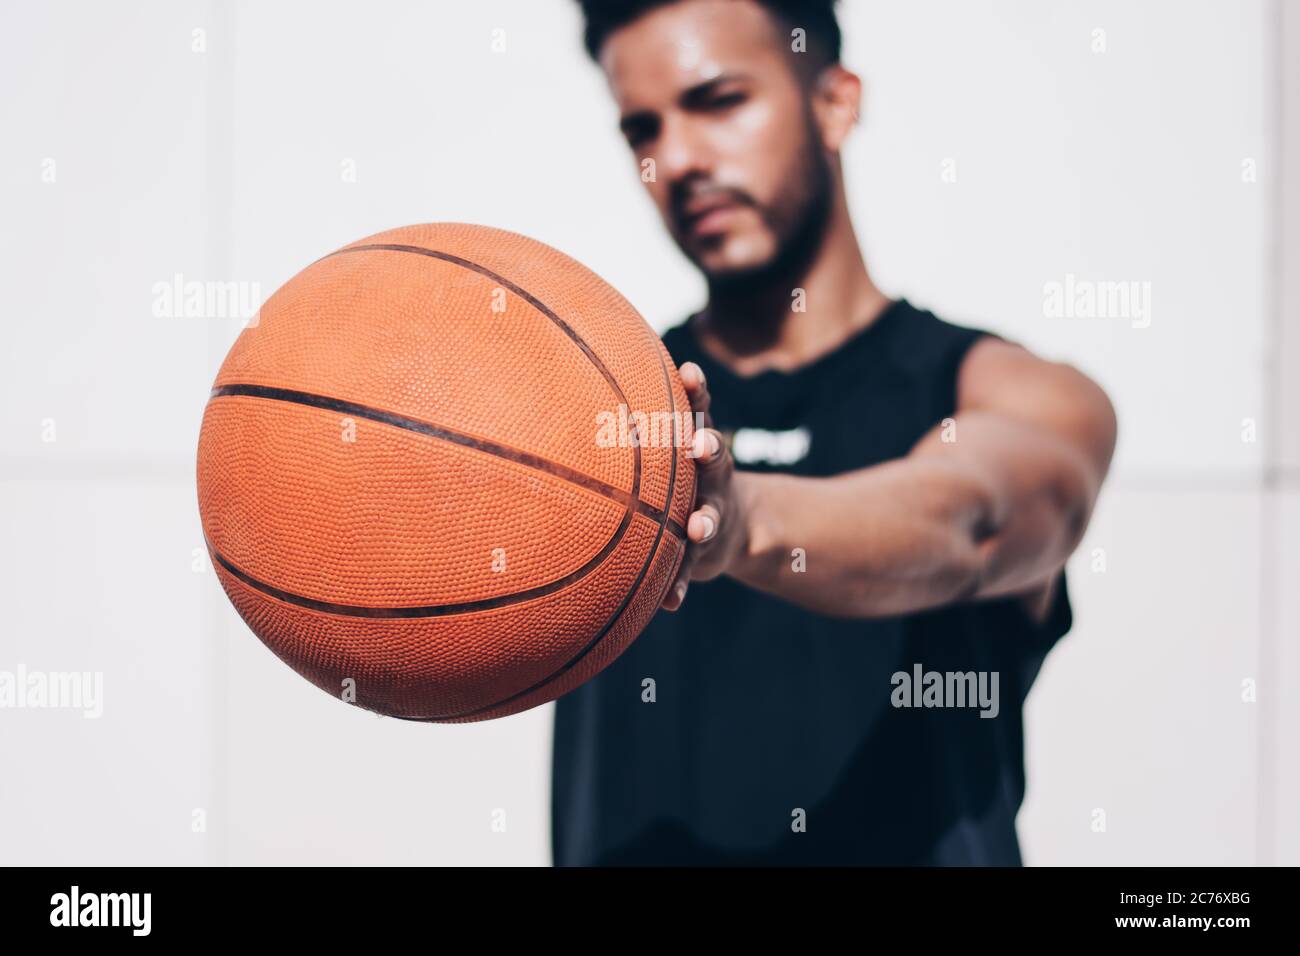 Der junge Mann hält einen Basketball vor der Kamera Stockfoto